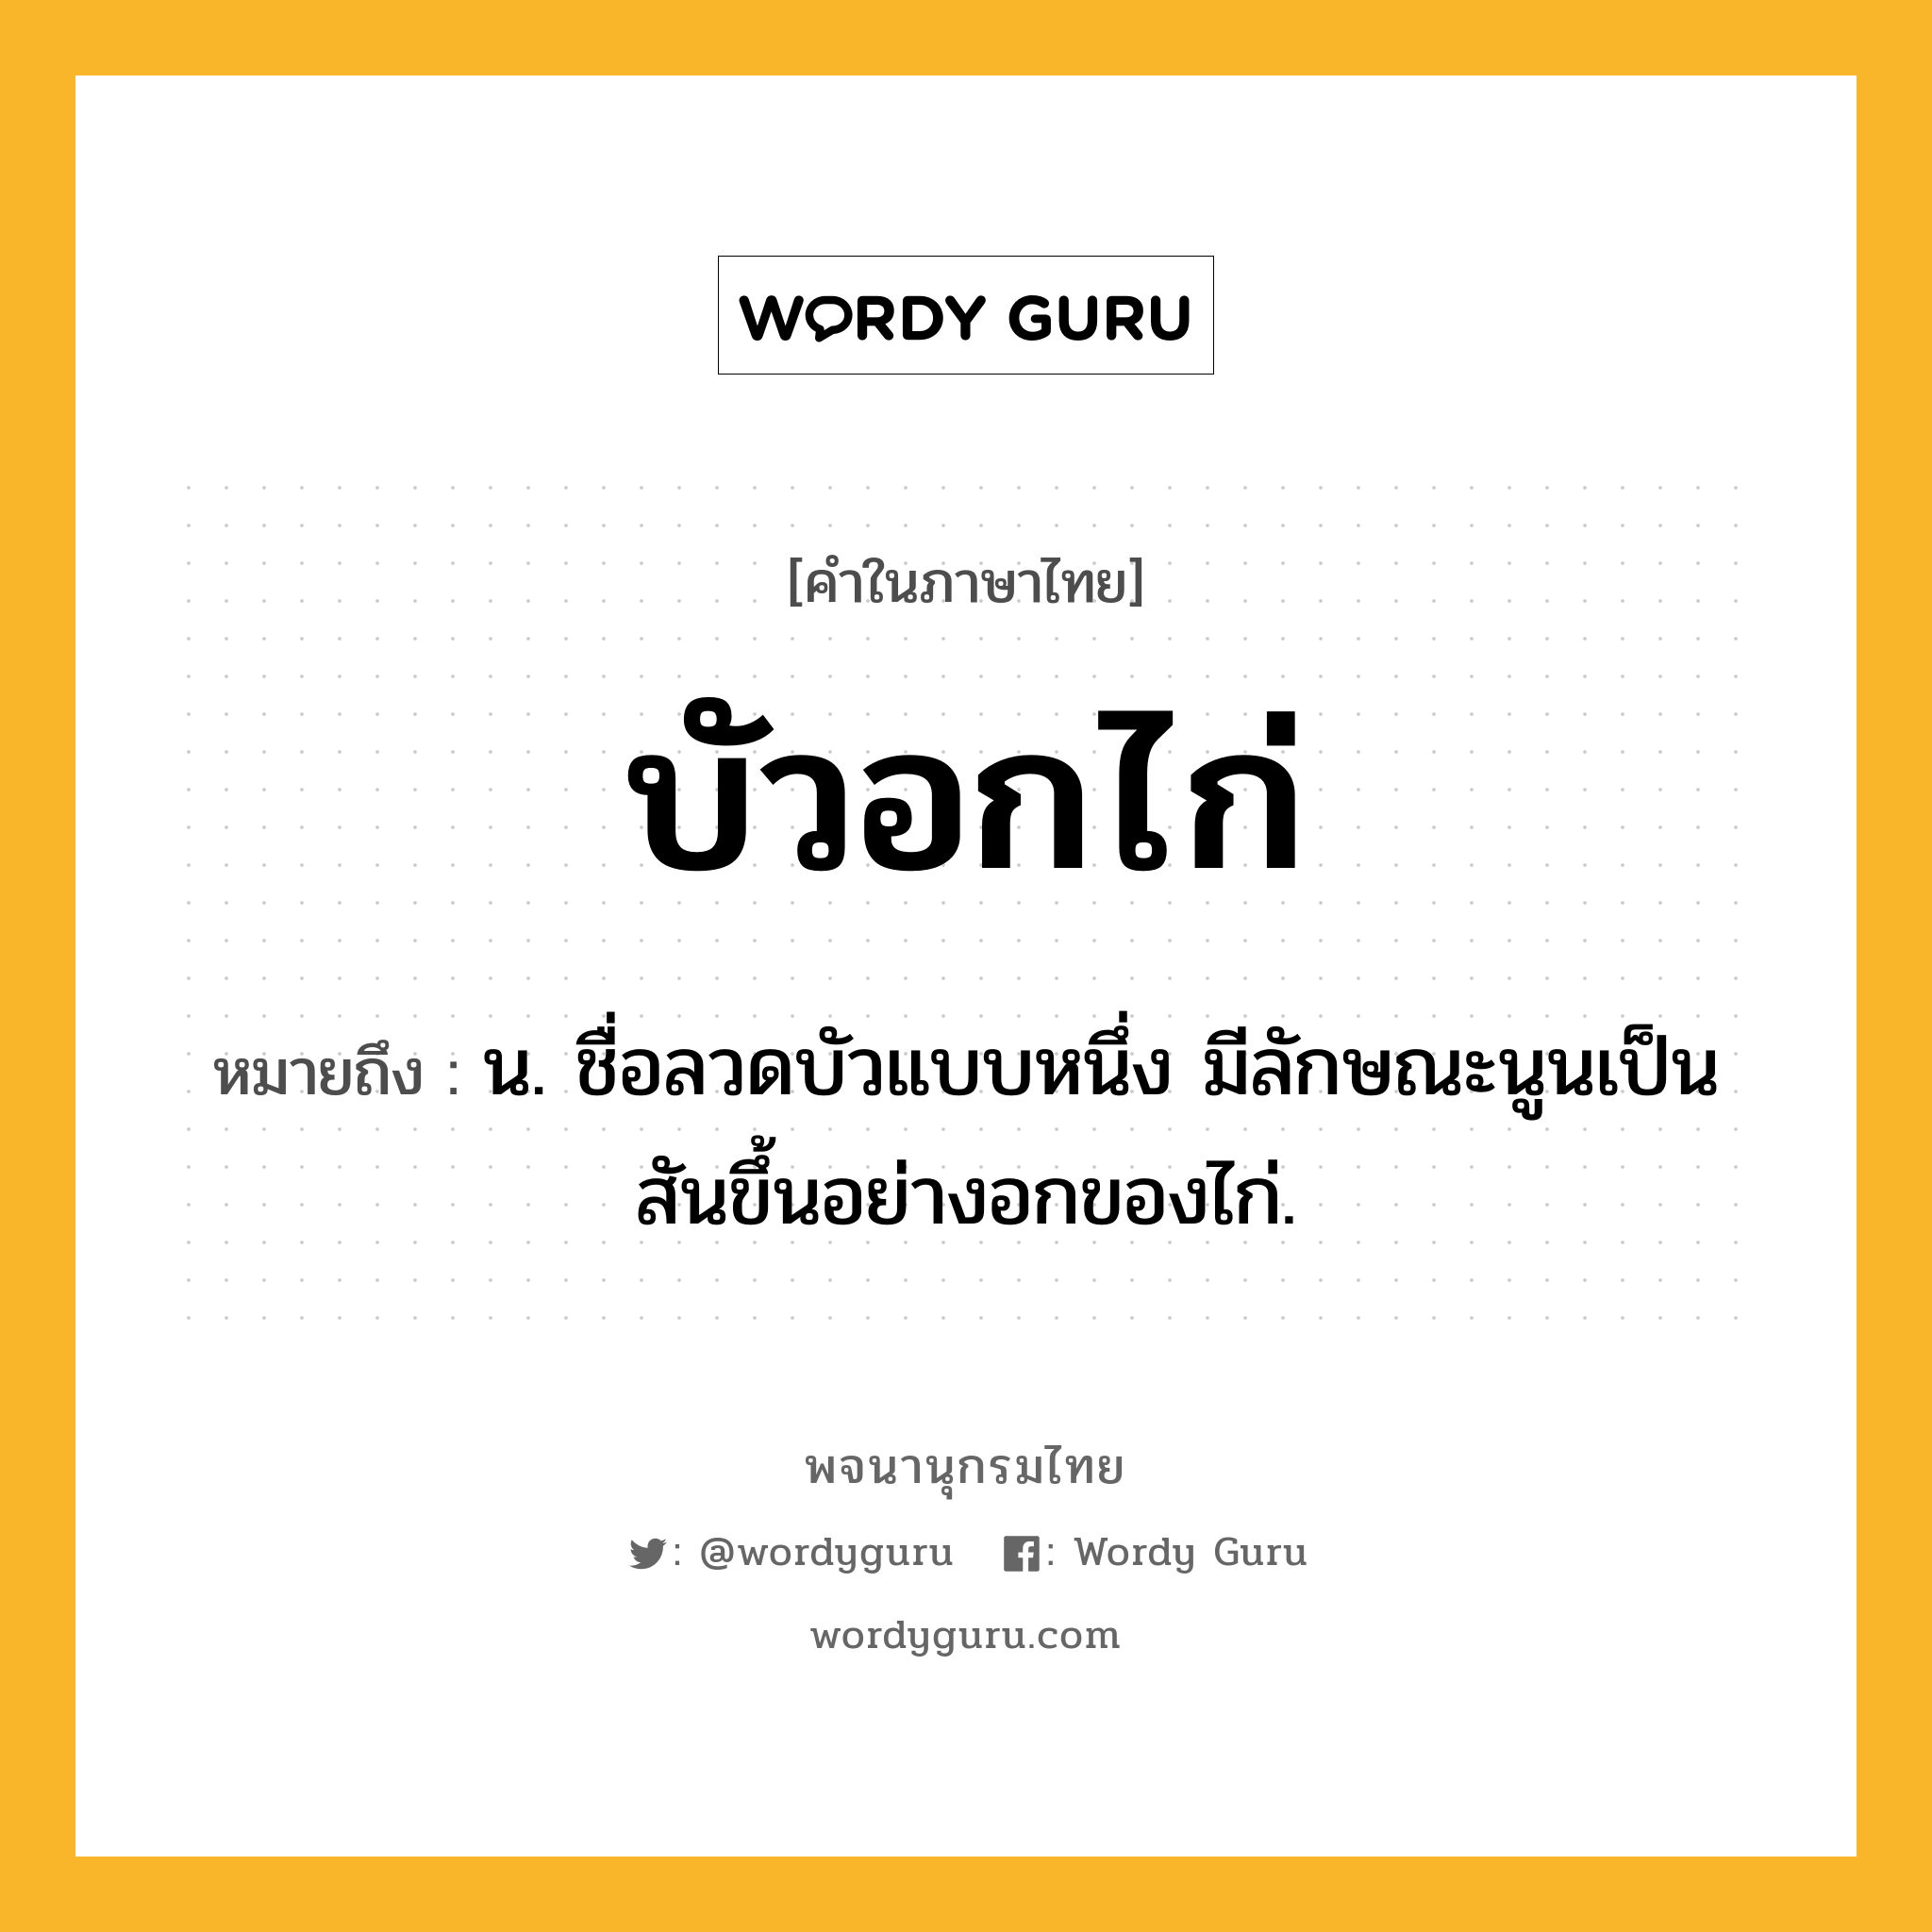 บัวอกไก่ ความหมาย หมายถึงอะไร?, คำในภาษาไทย บัวอกไก่ หมายถึง น. ชื่อลวดบัวแบบหนึ่ง มีลักษณะนูนเป็นสันขึ้นอย่างอกของไก่.